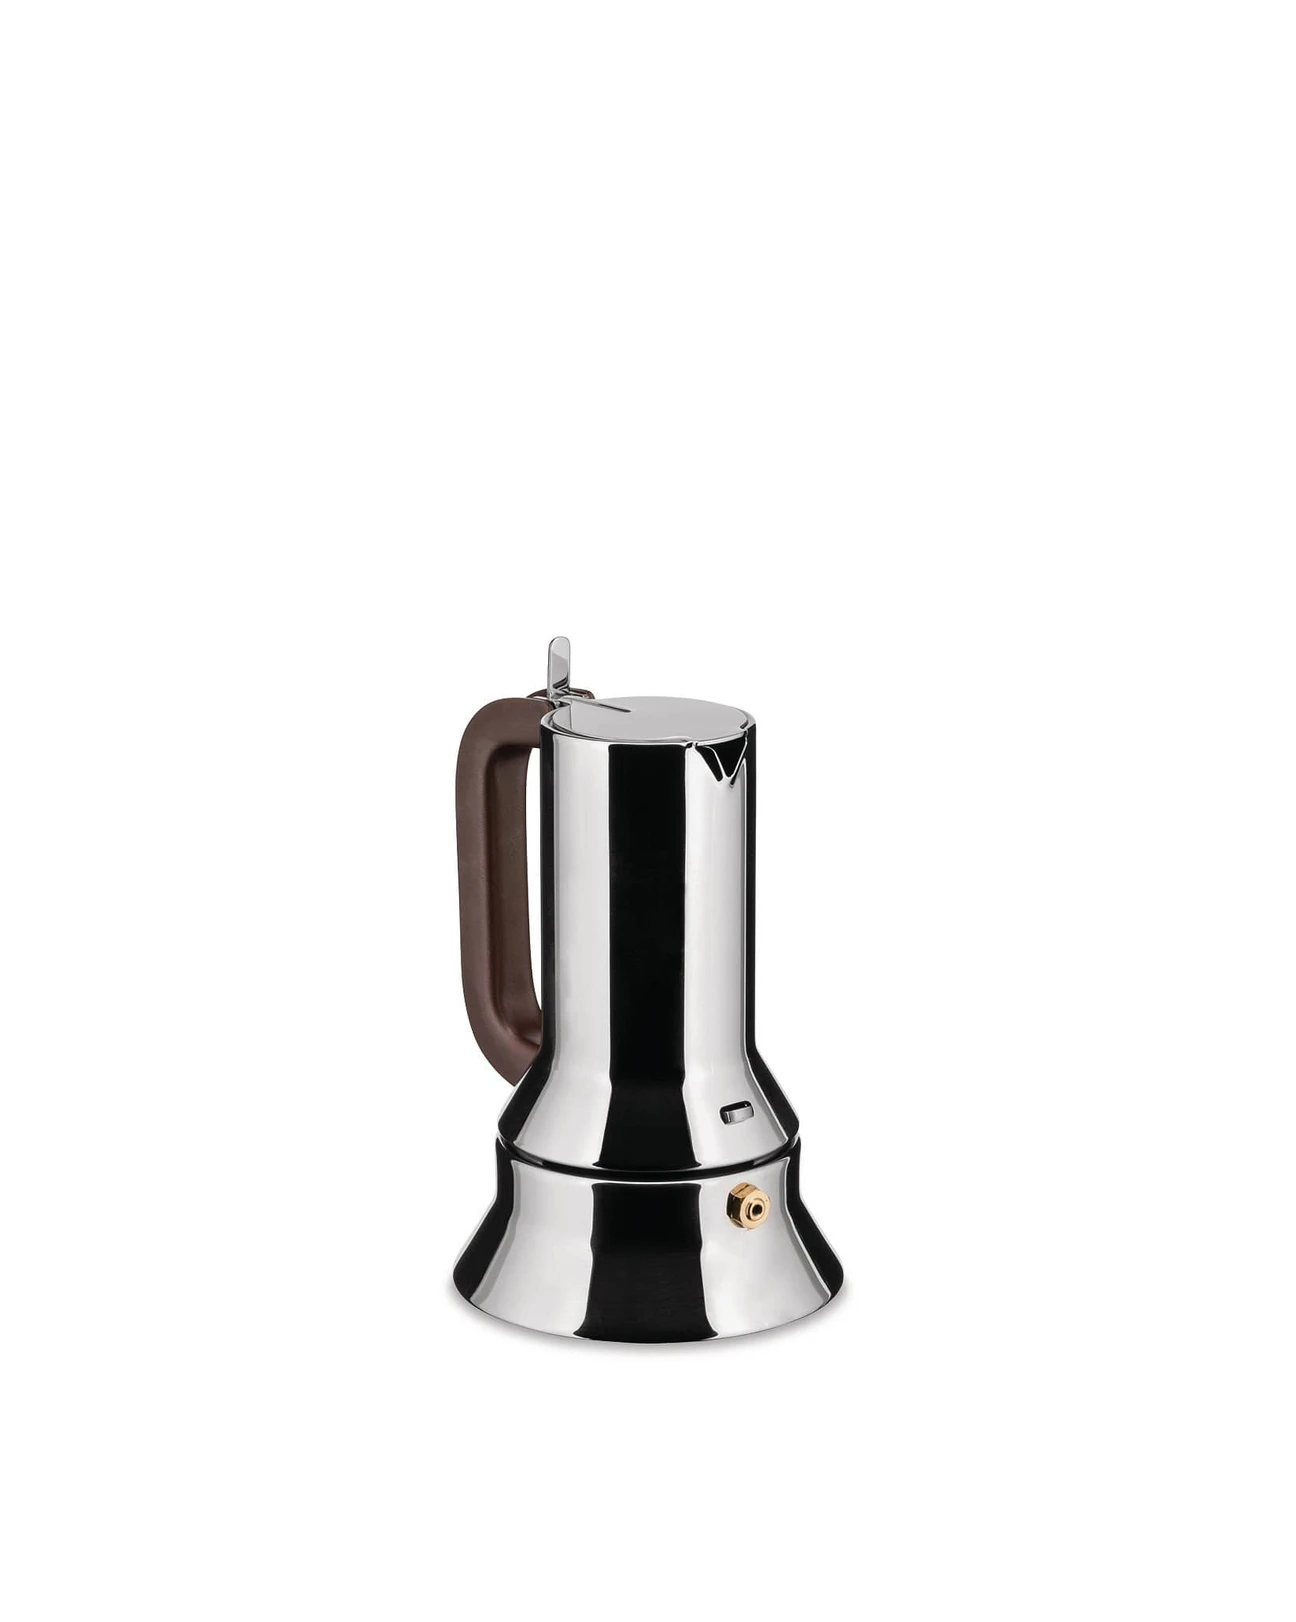 Alessi Espresso Coffee Maker 9090, 6 cup